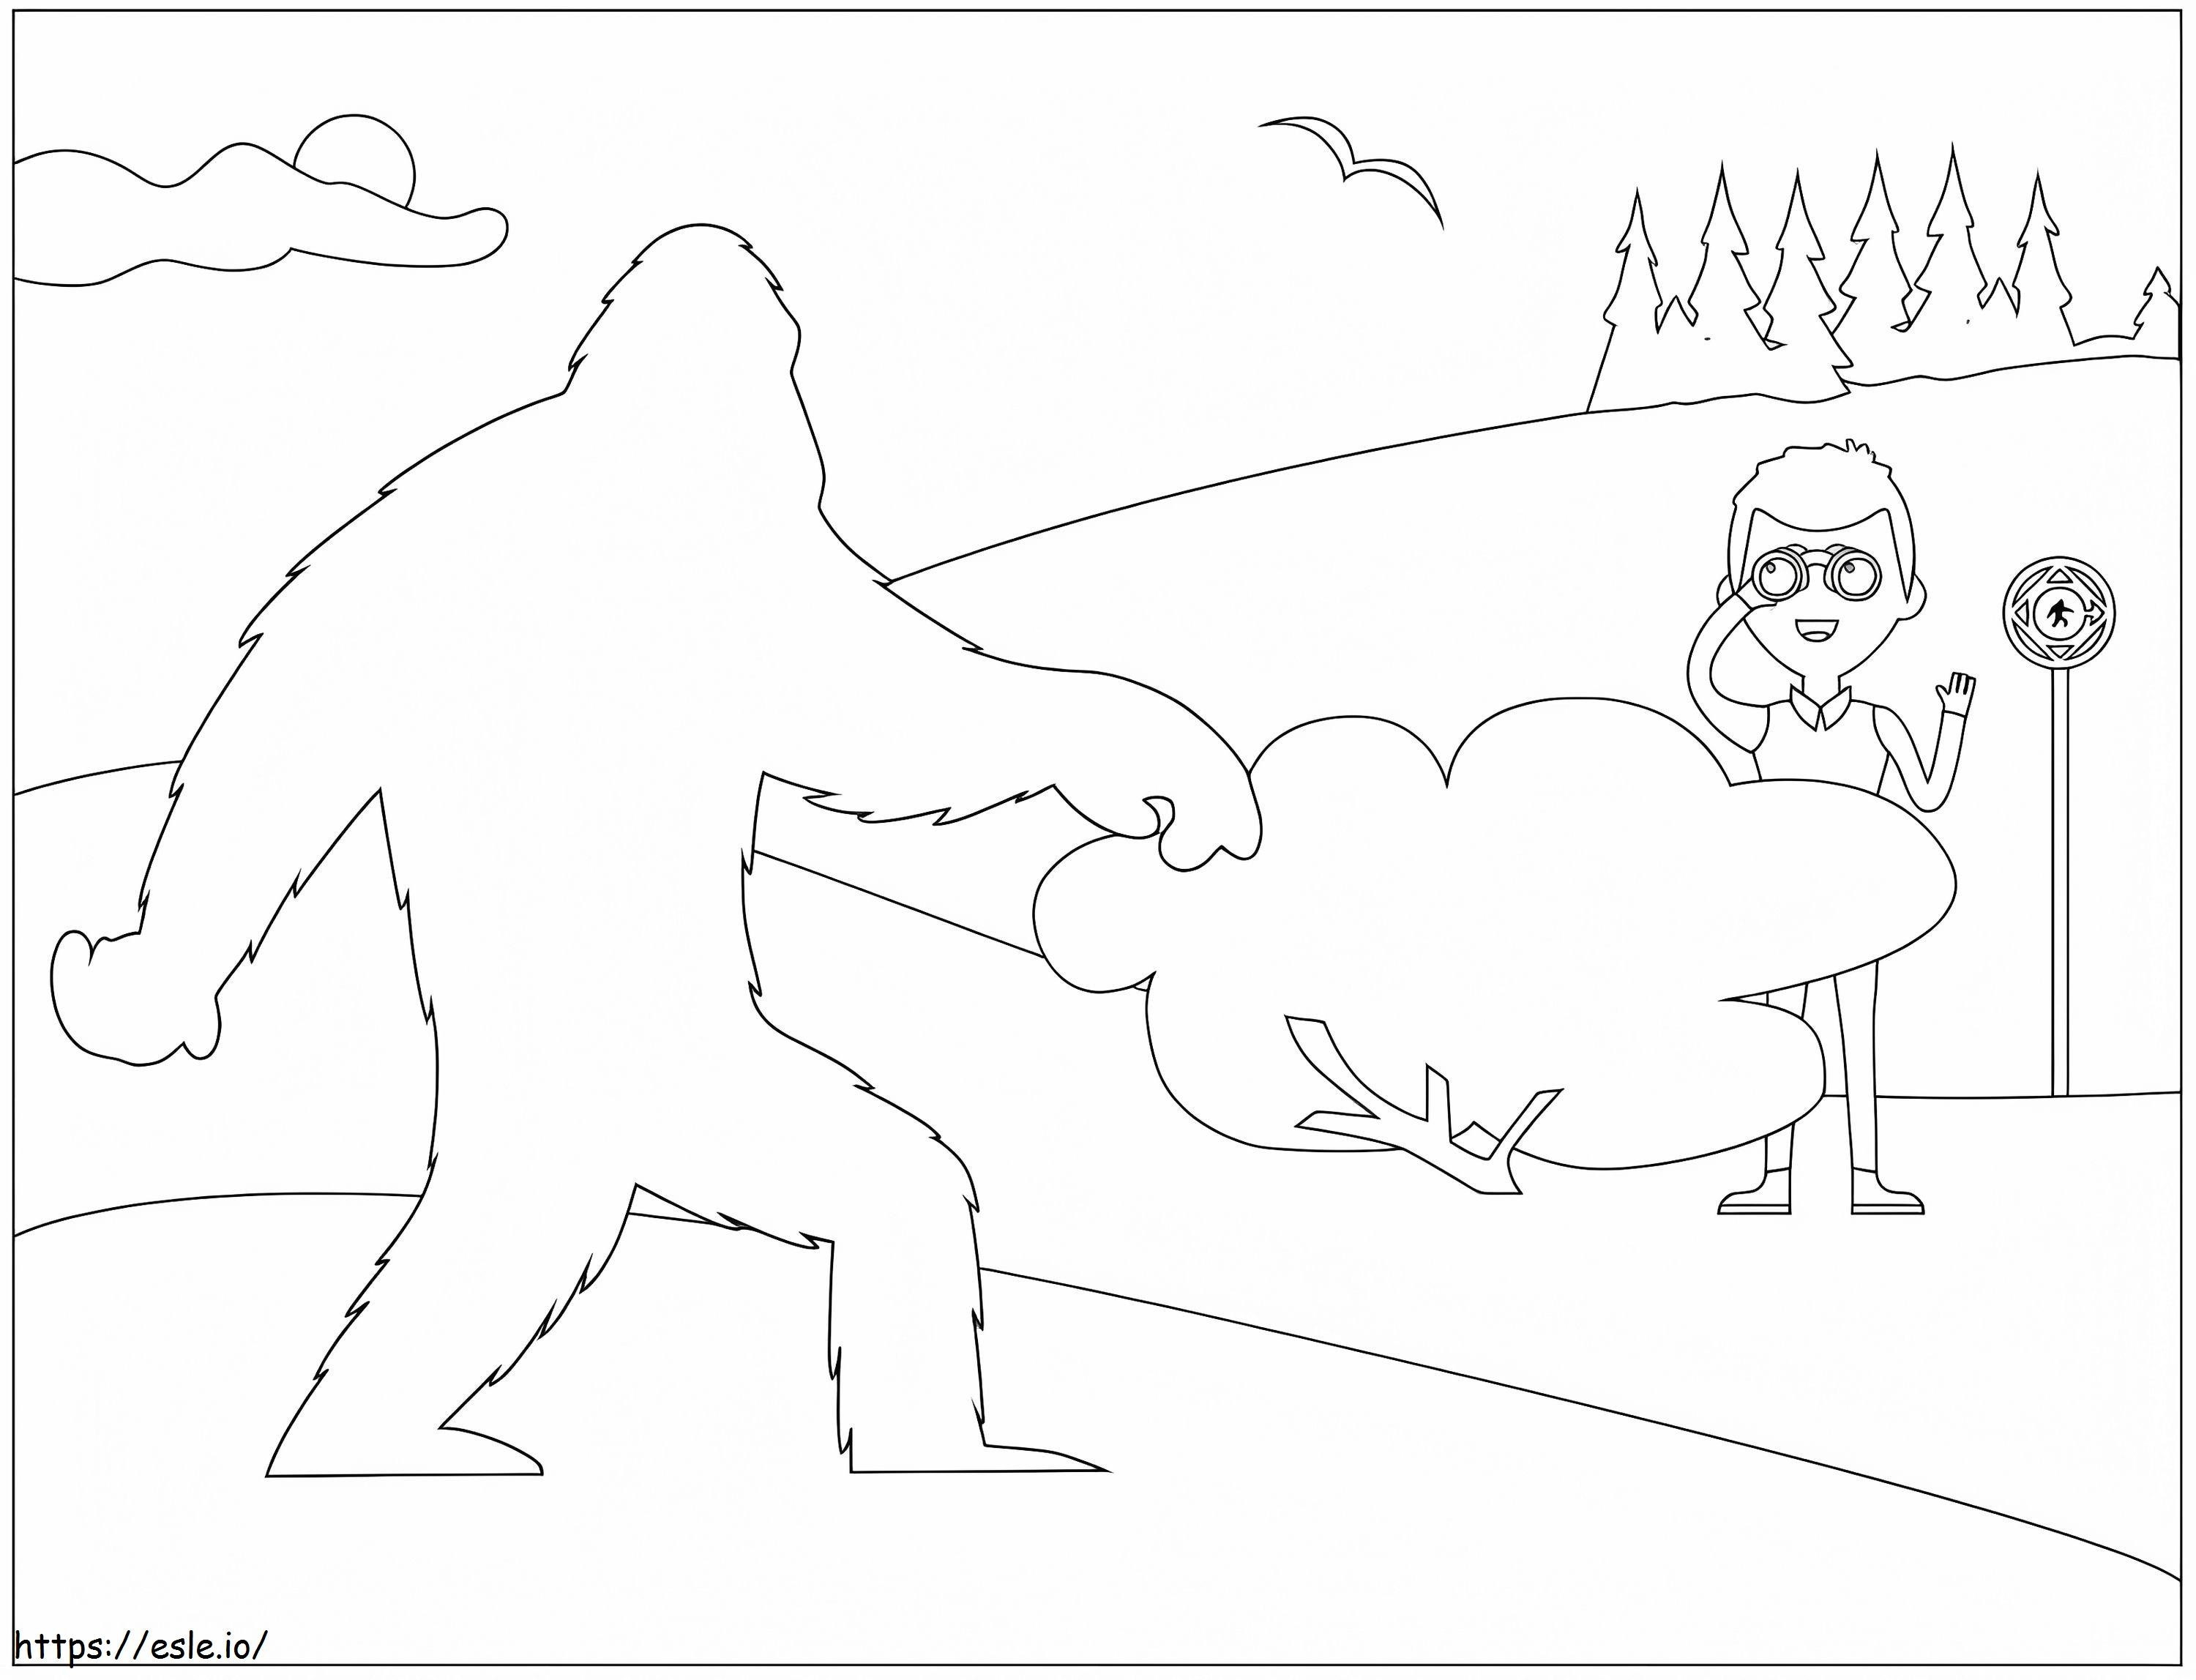 Coloriage À la recherche de Bigfoot à imprimer dessin